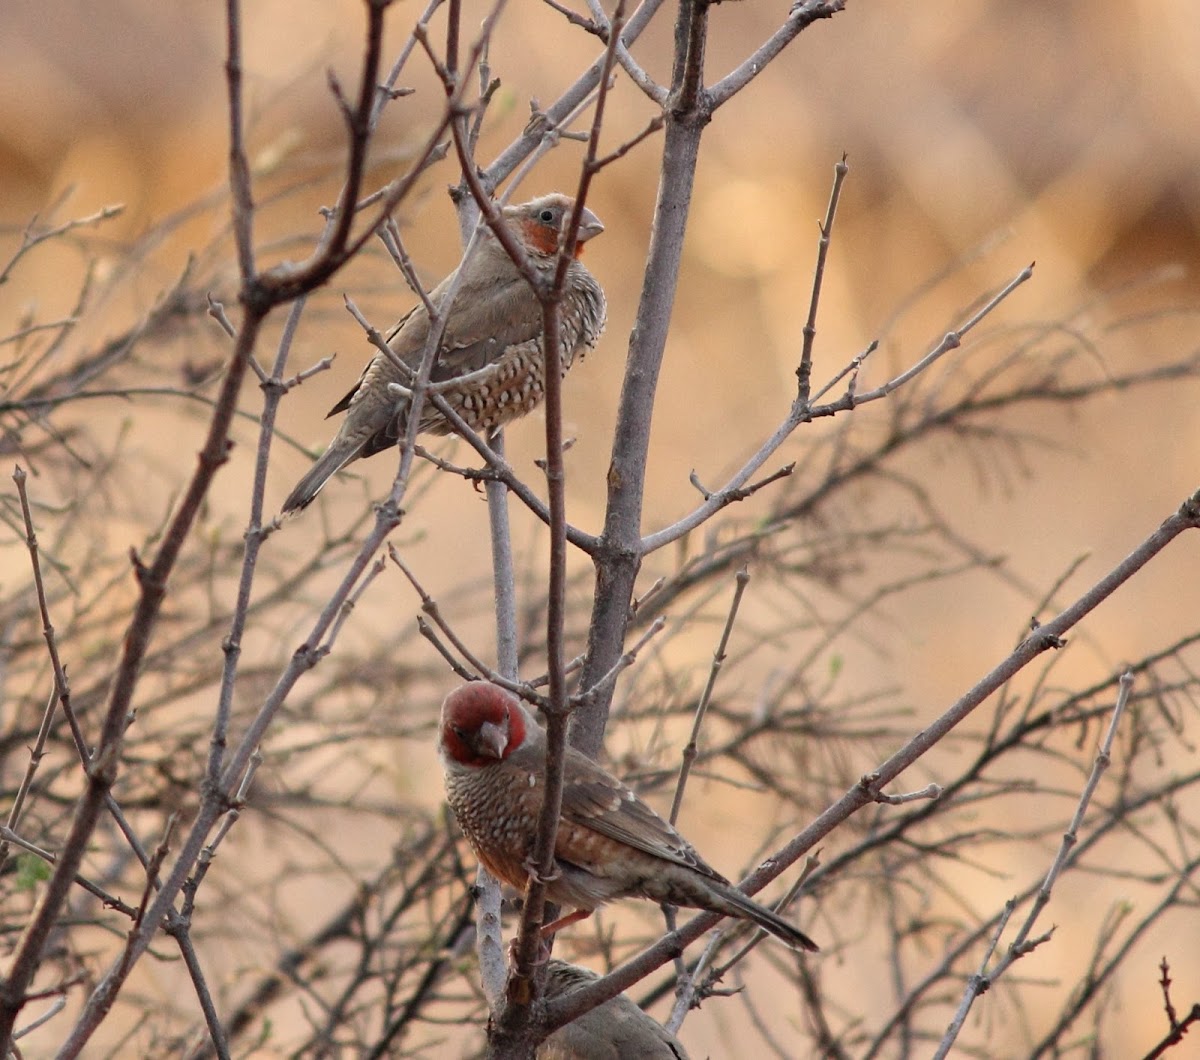 Red-headed finch